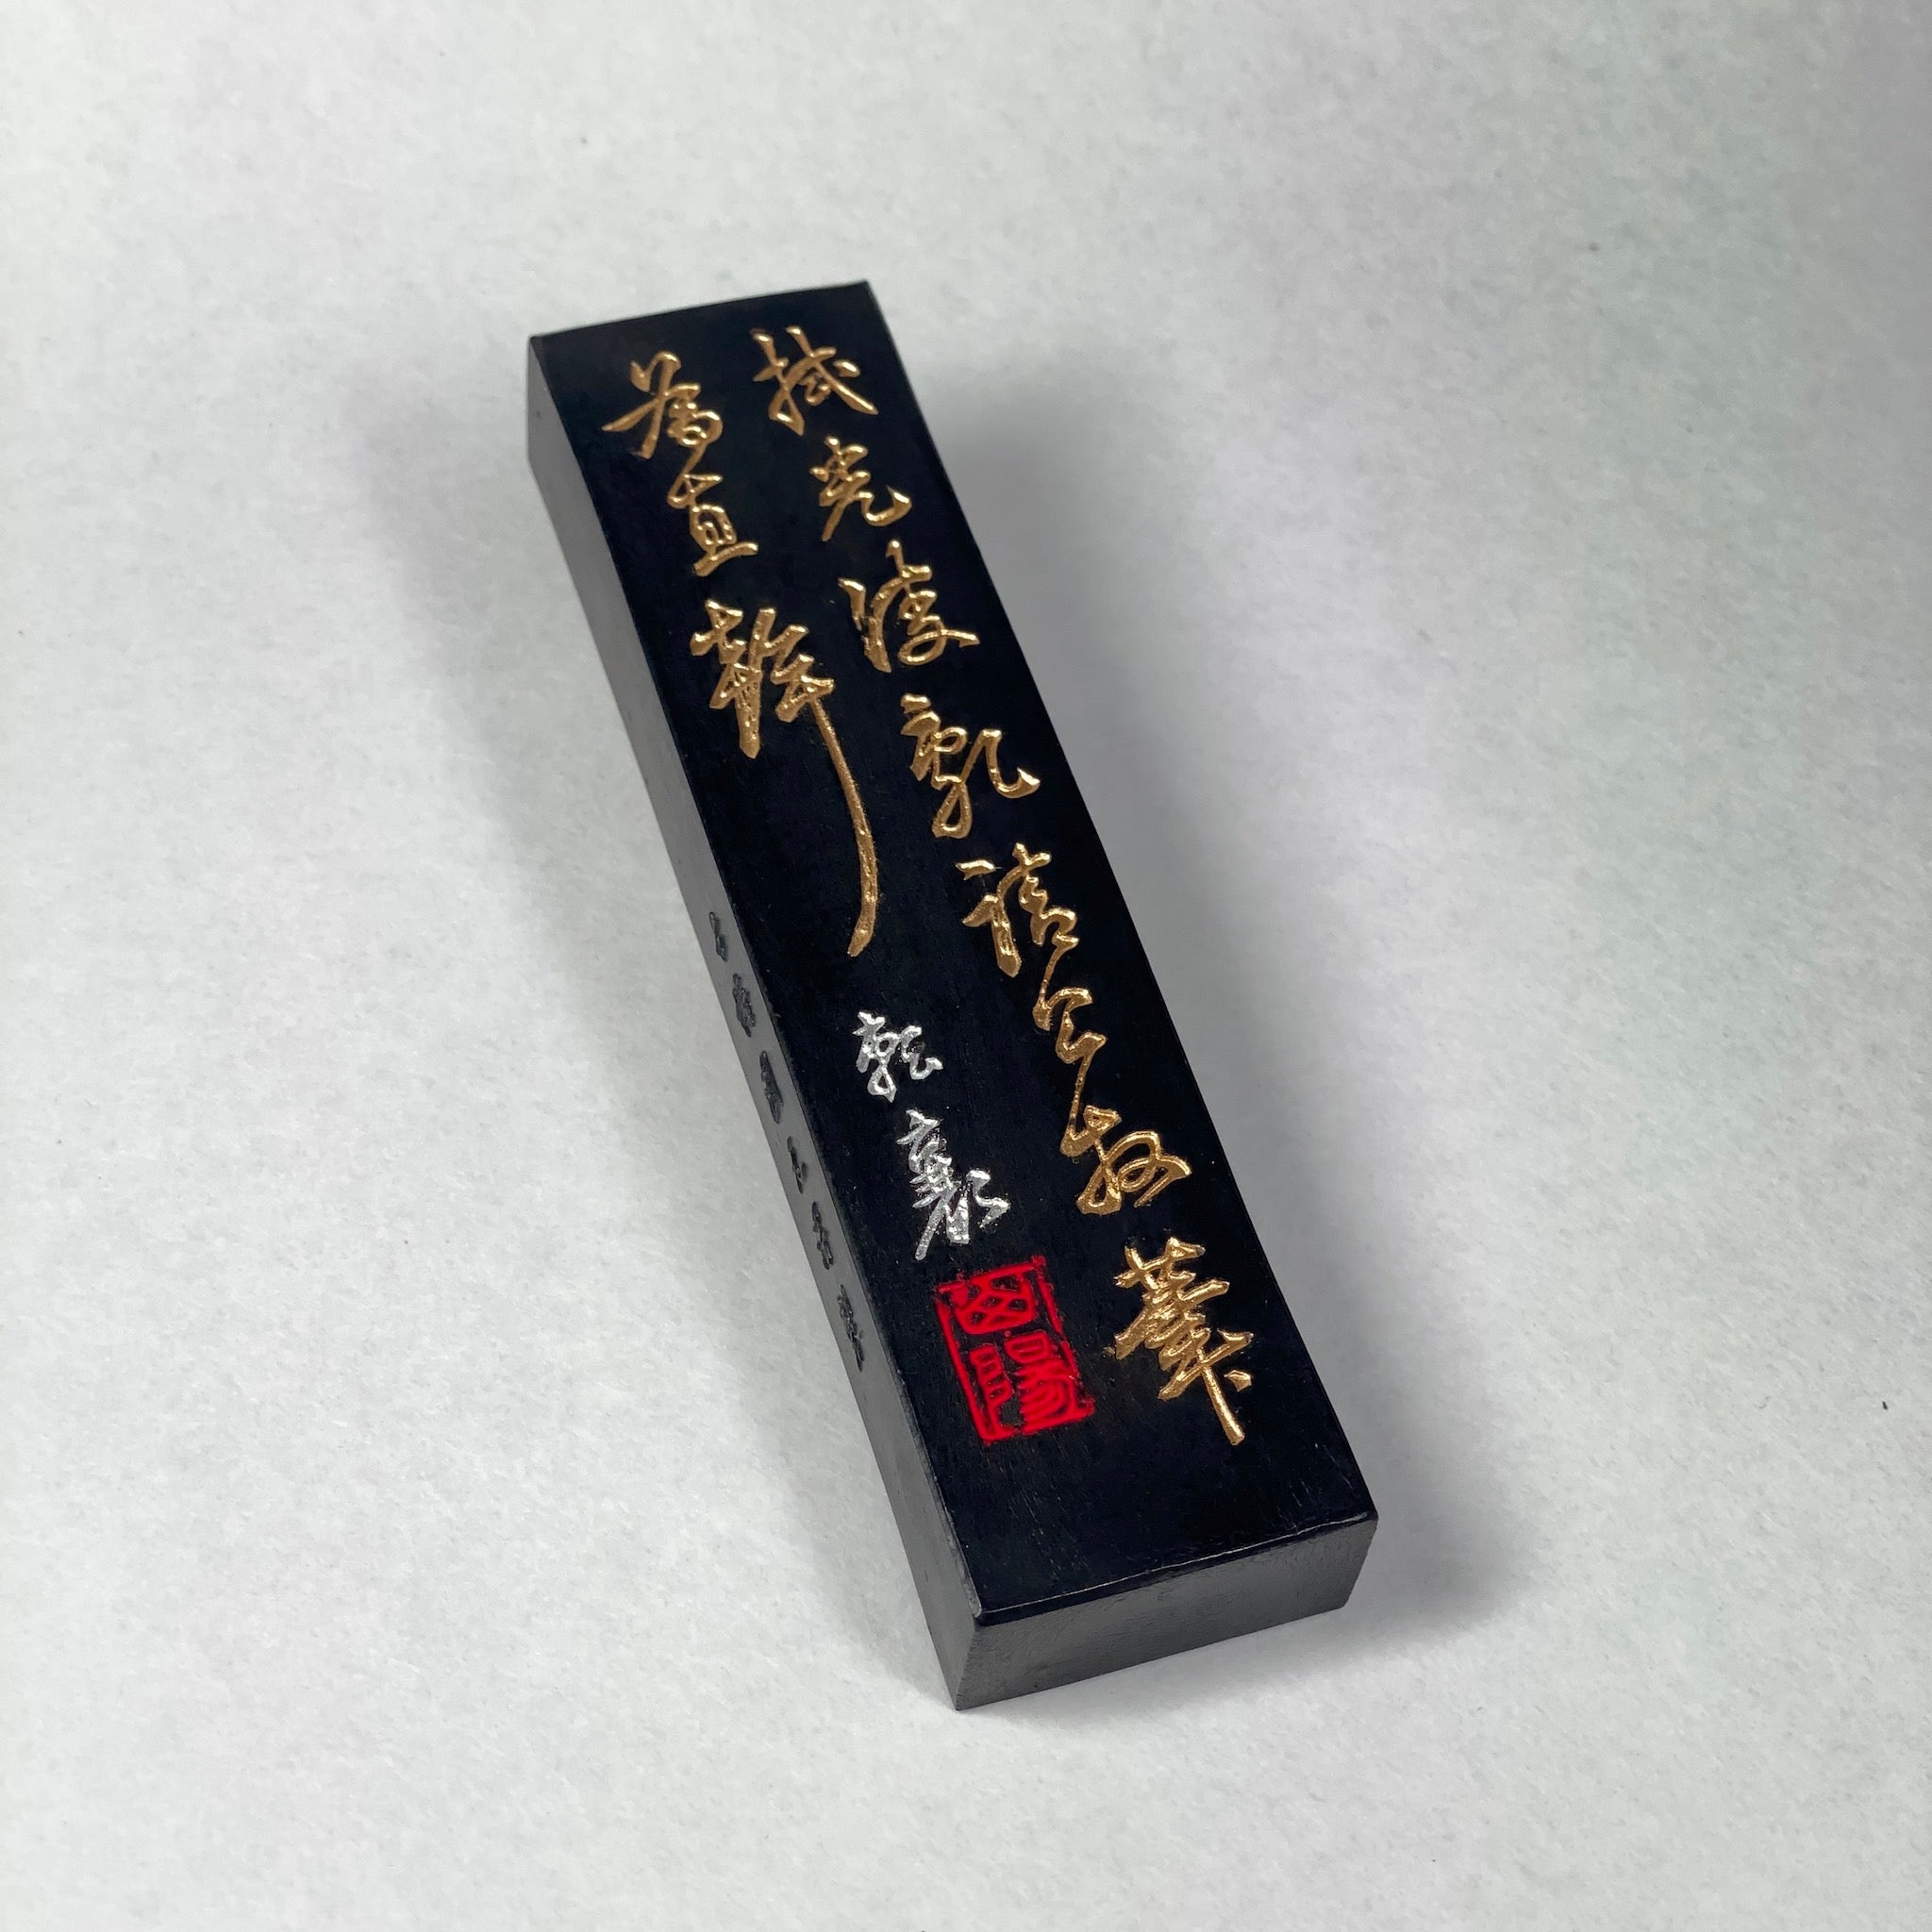 我有 (Gayu  松烟墨 松園墨 由古梅园(古梅園)制造 ) manufactured by KOBAIEN, Nara, Japan